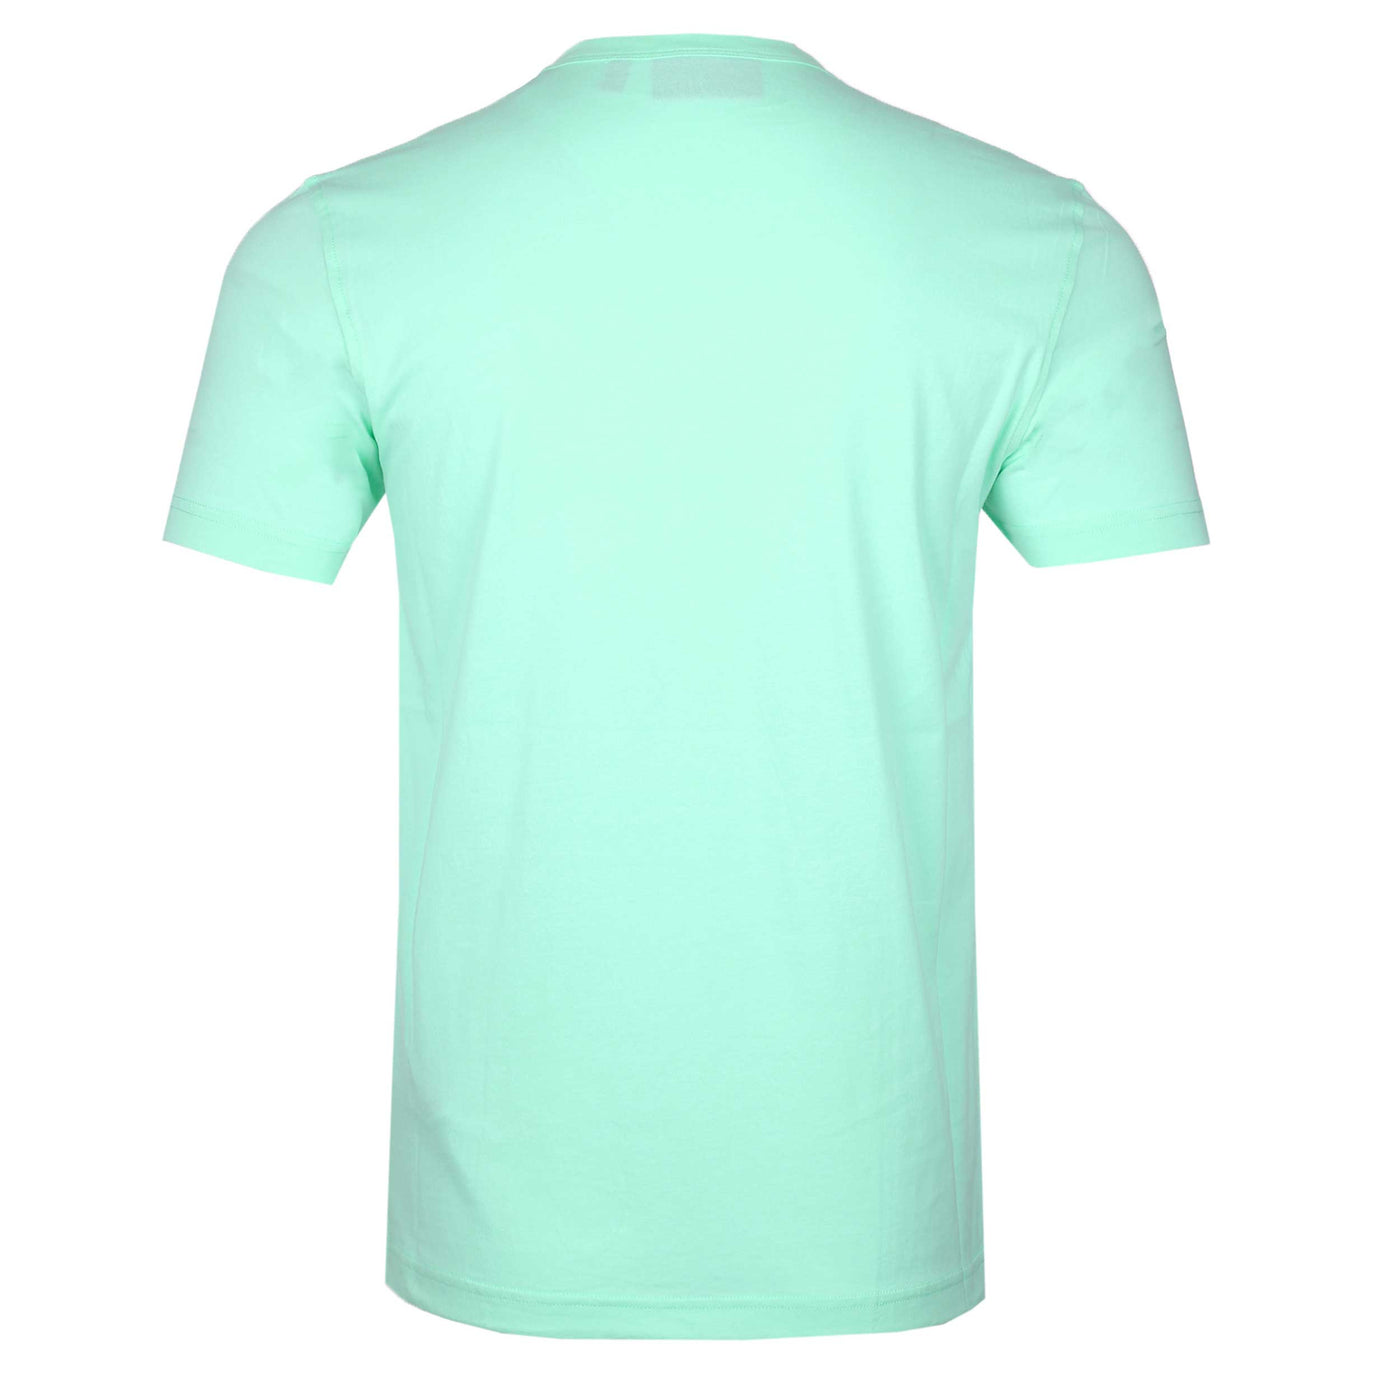 Belstaff Classic T-Shirt in Ocean Green